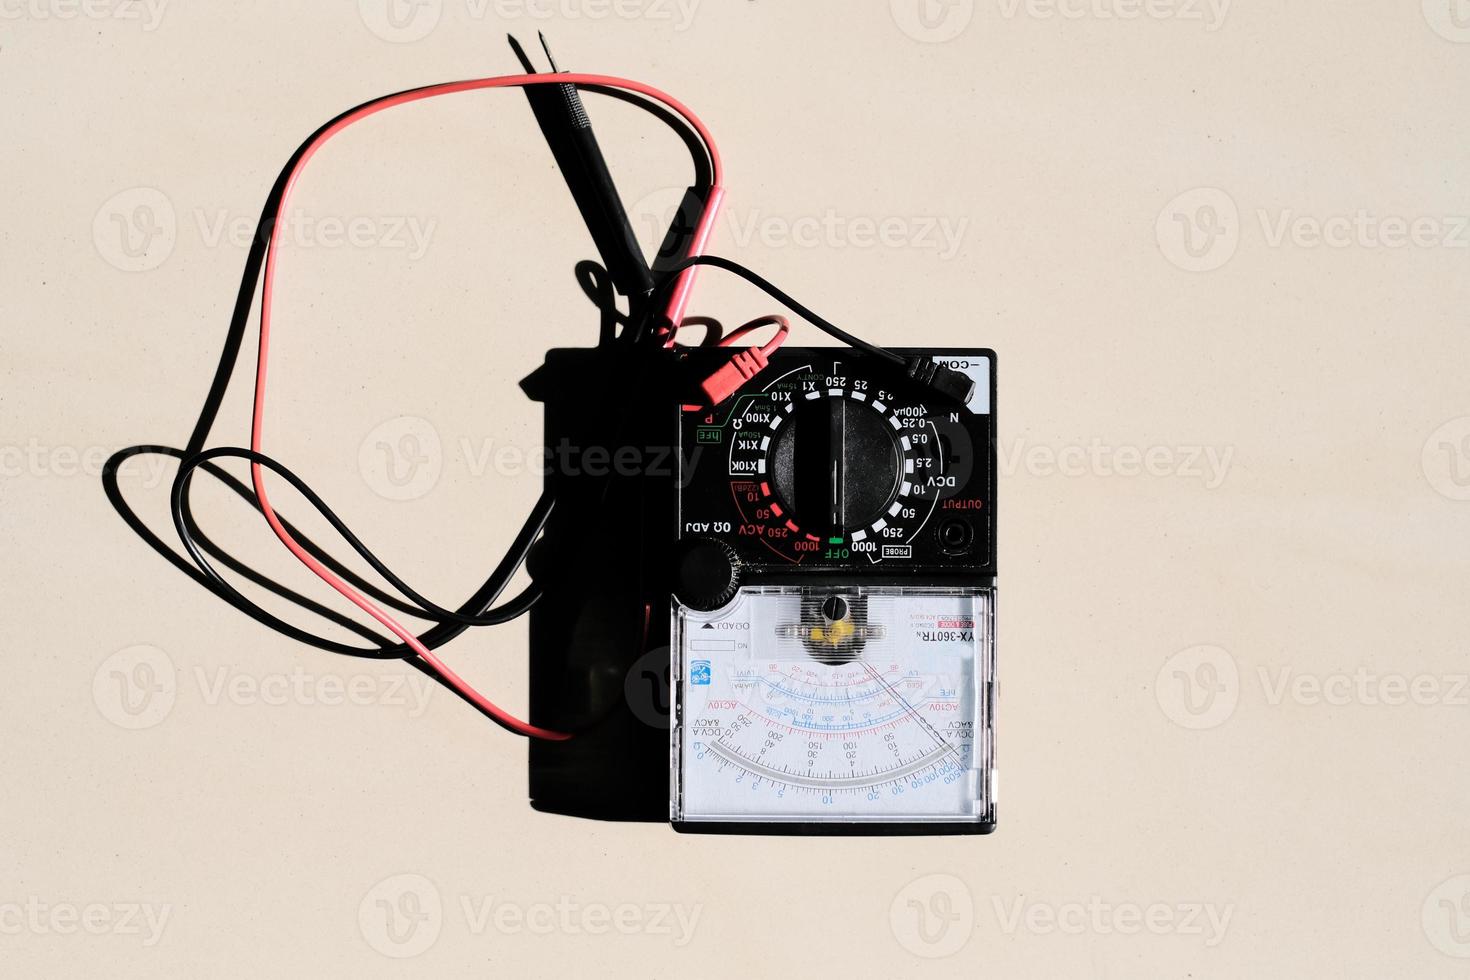 analog multimetermätutrustning för kontroll av strömspänningen vid strömbrytare och ledningssystem på huvudströmfördelningstavlor. foto